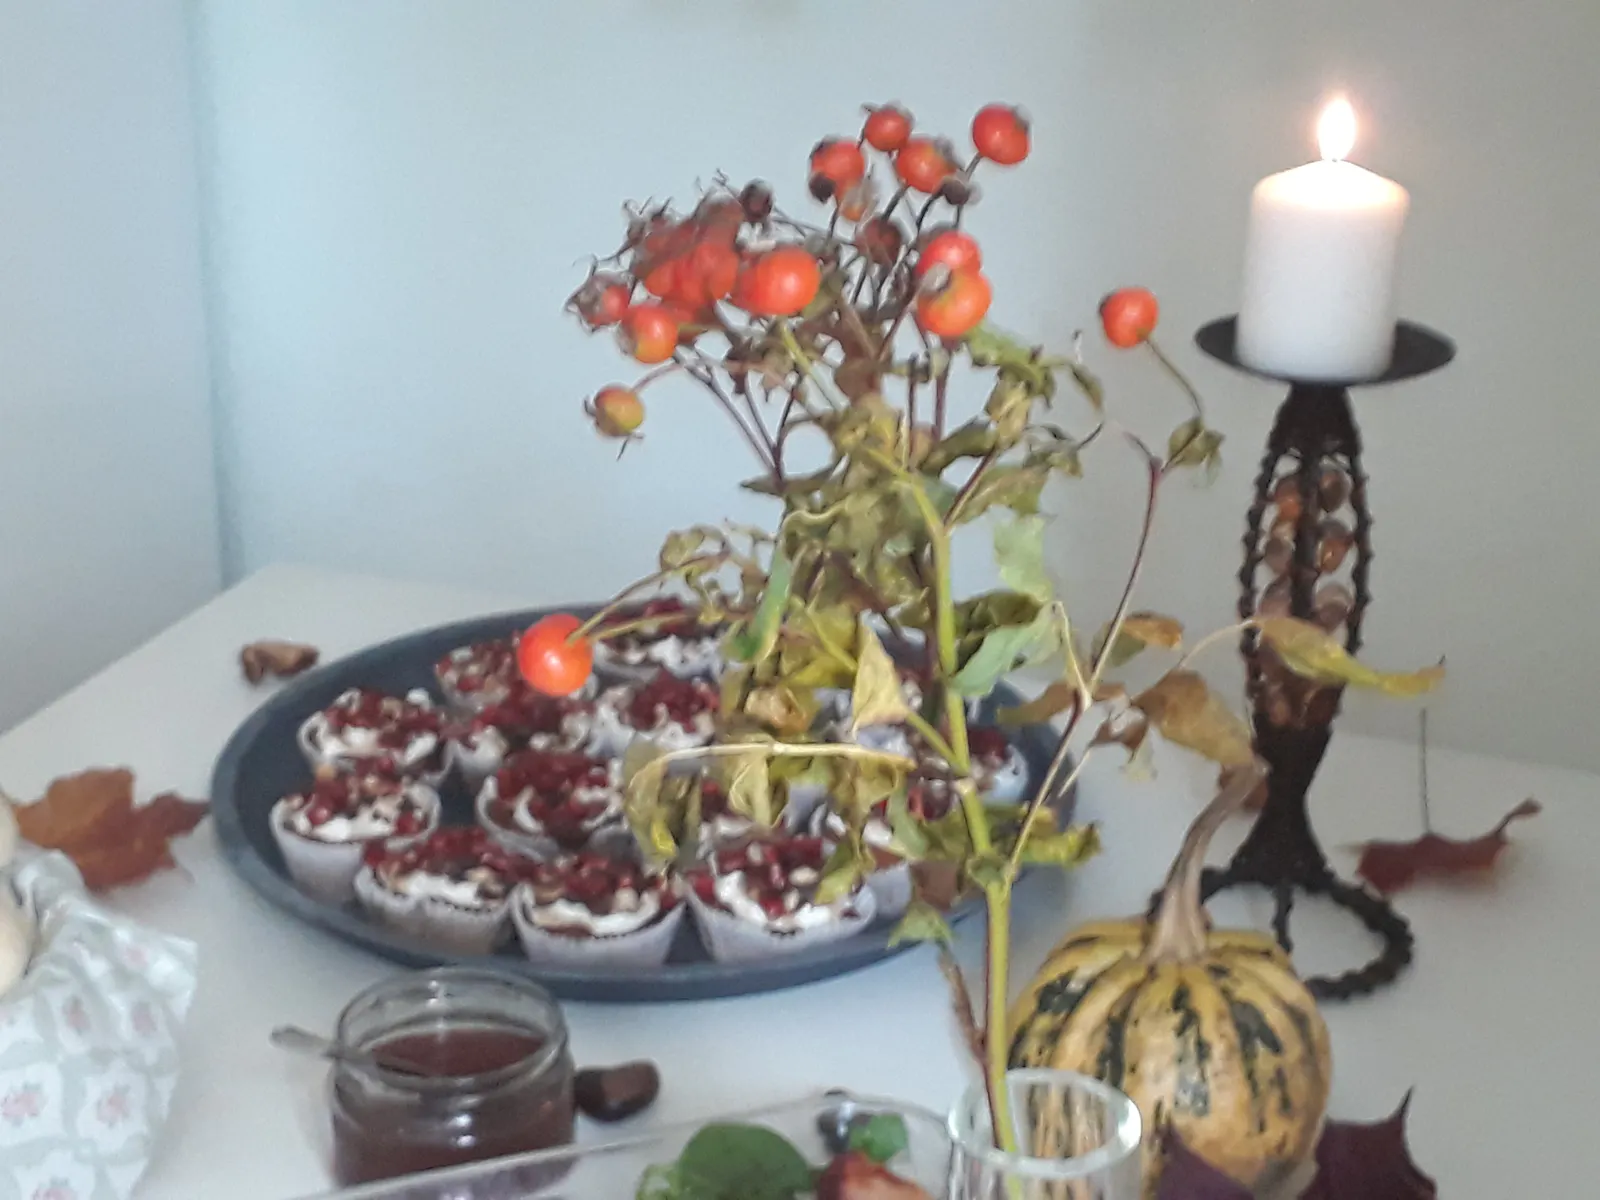 Herbstlich gedeckter Buffet-Tisch mit Kuchen, Kerze, Kürbis und Hagebuttenzweigen.